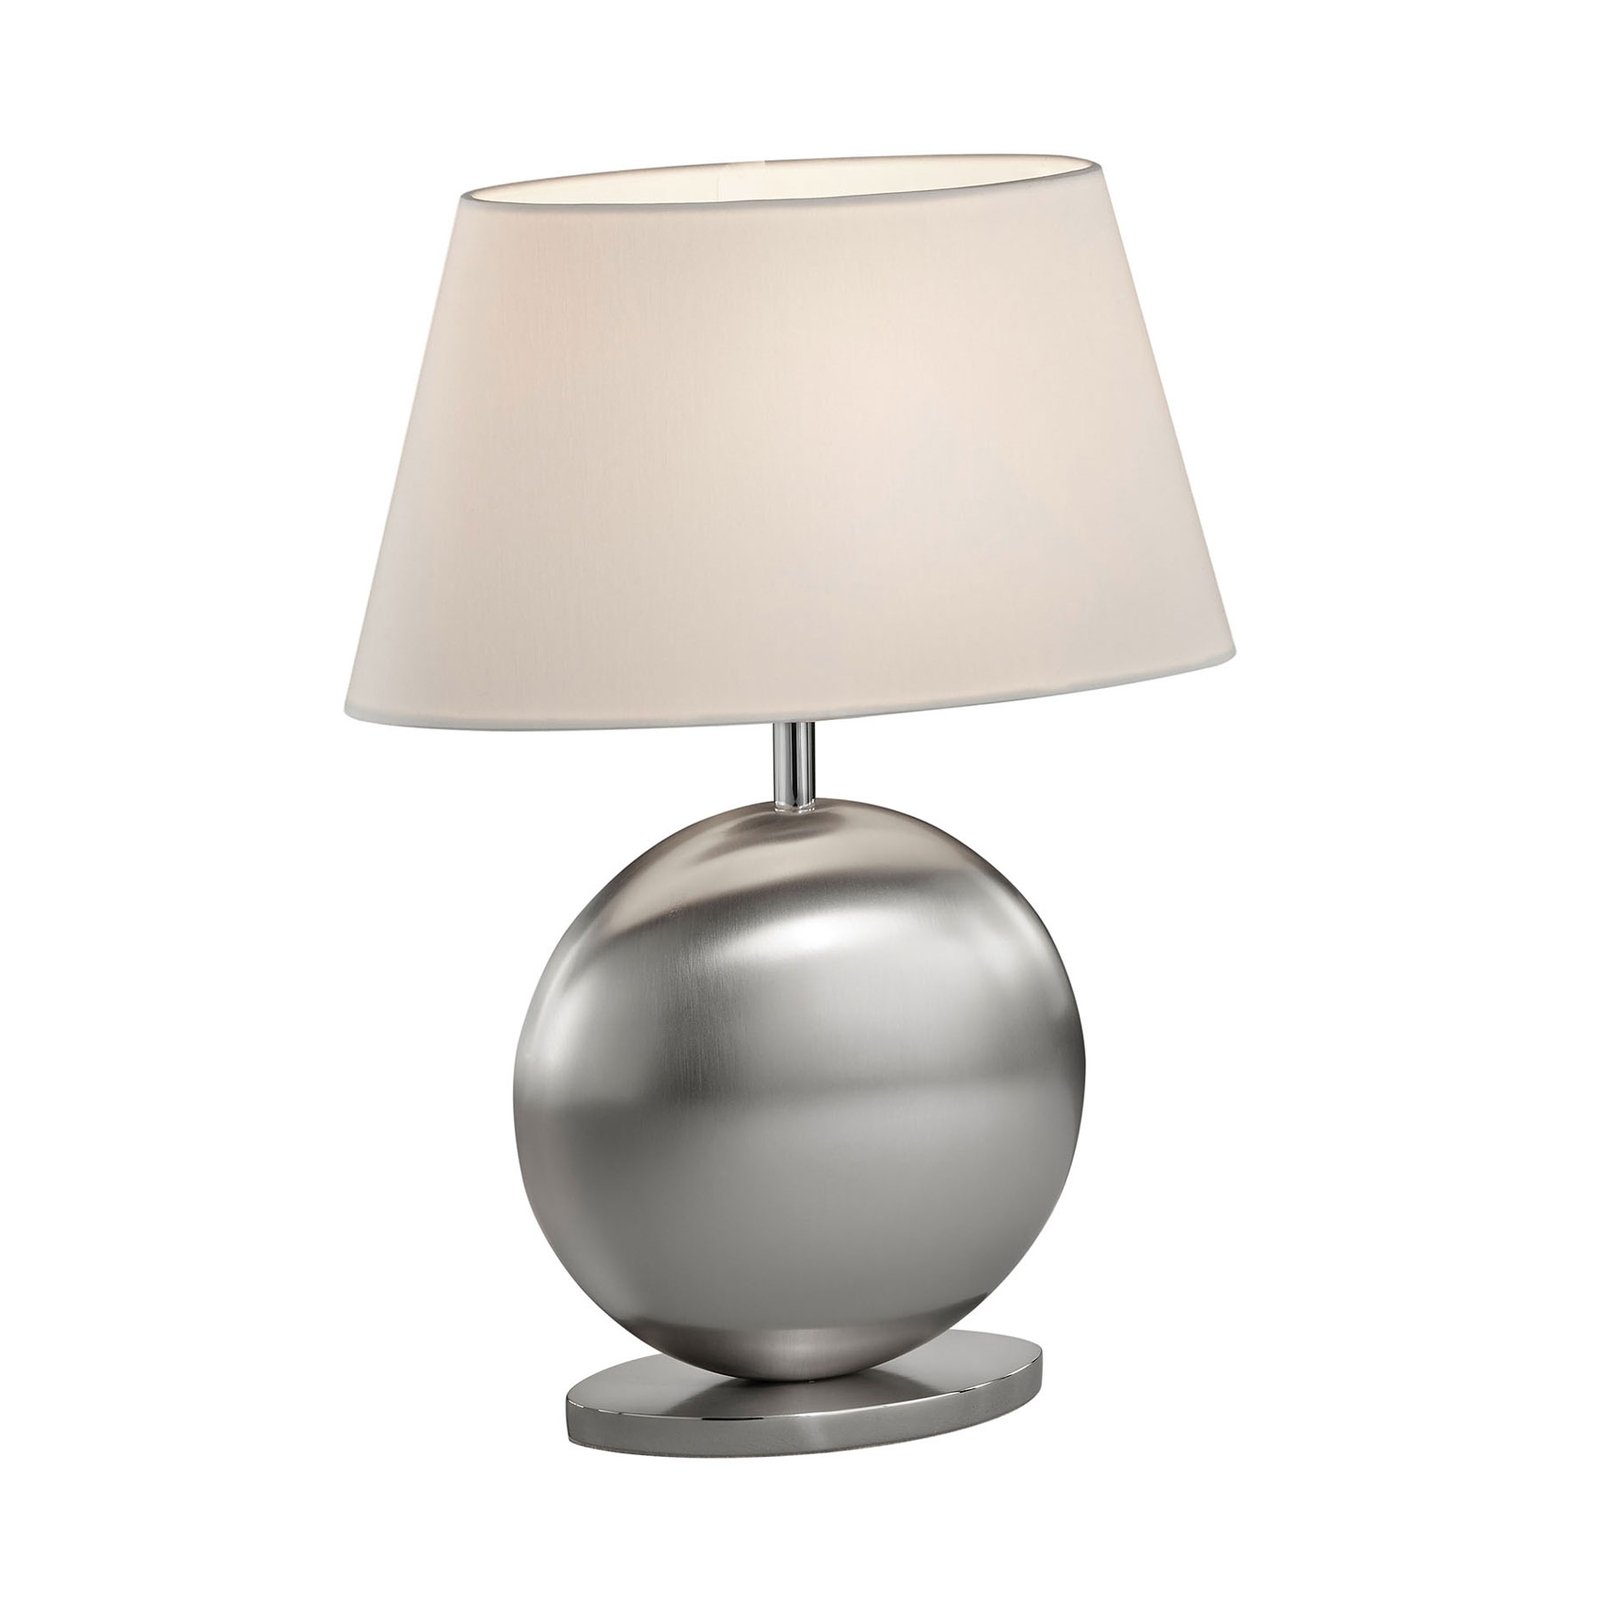 BANKAMP Asolo lámpa, fehér/nikkel, magassága 41 cm